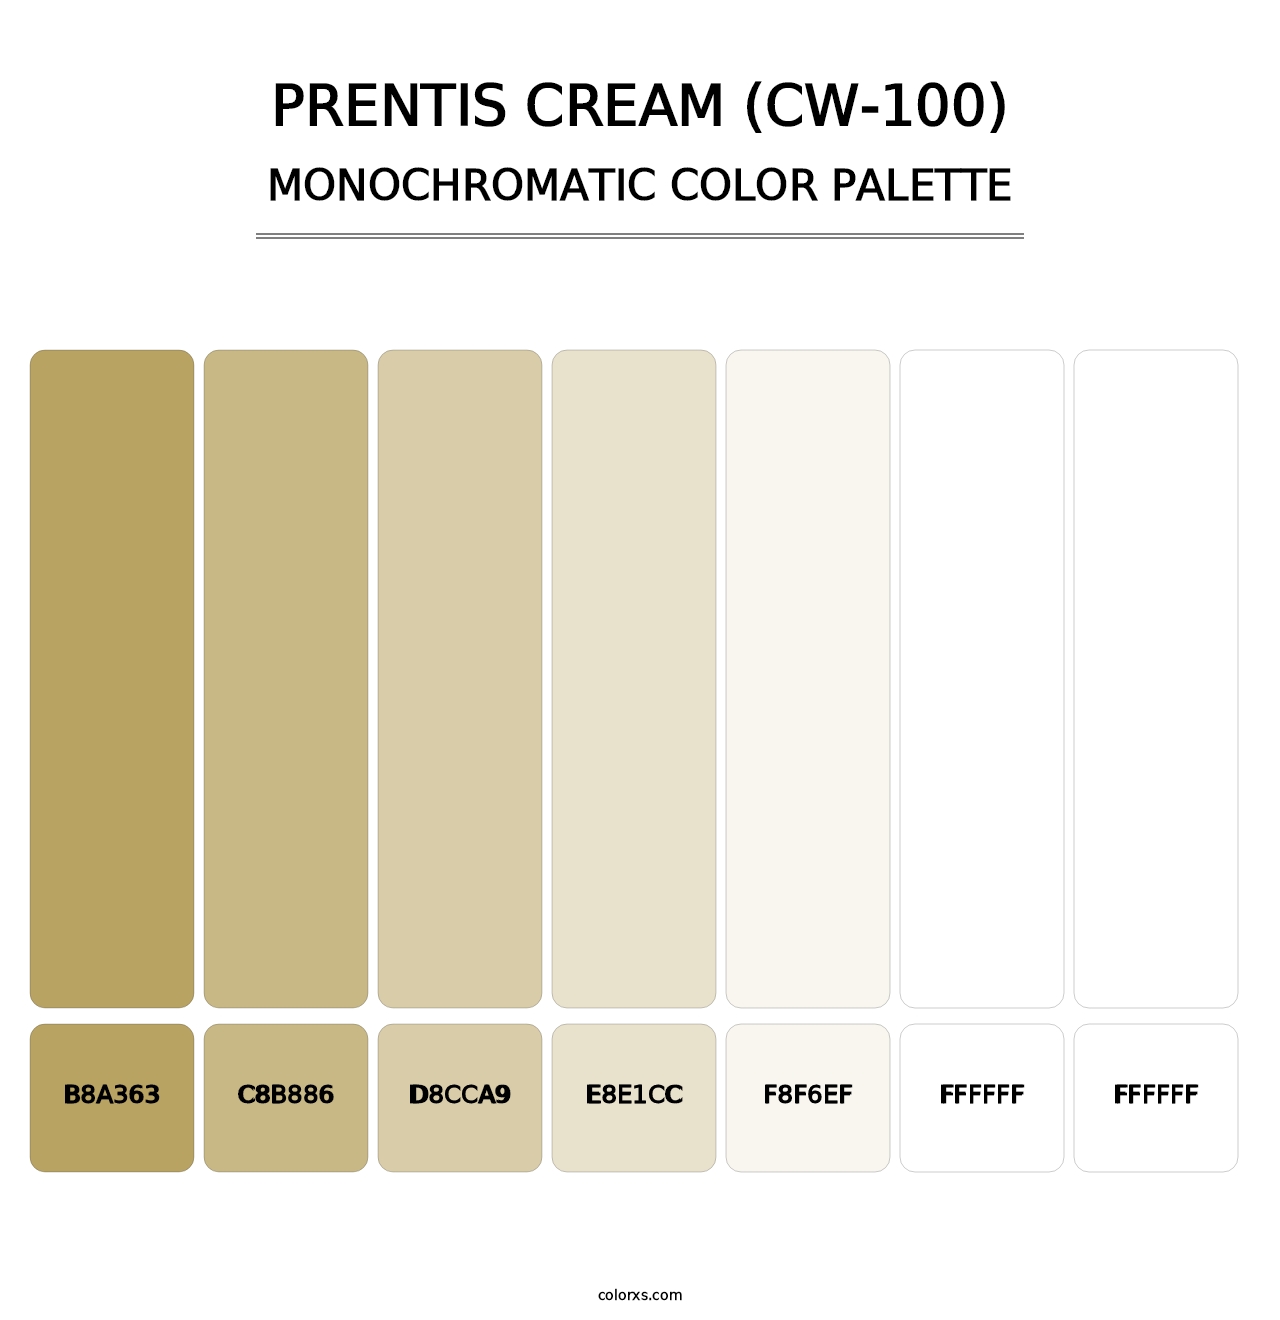 Prentis Cream (CW-100) - Monochromatic Color Palette